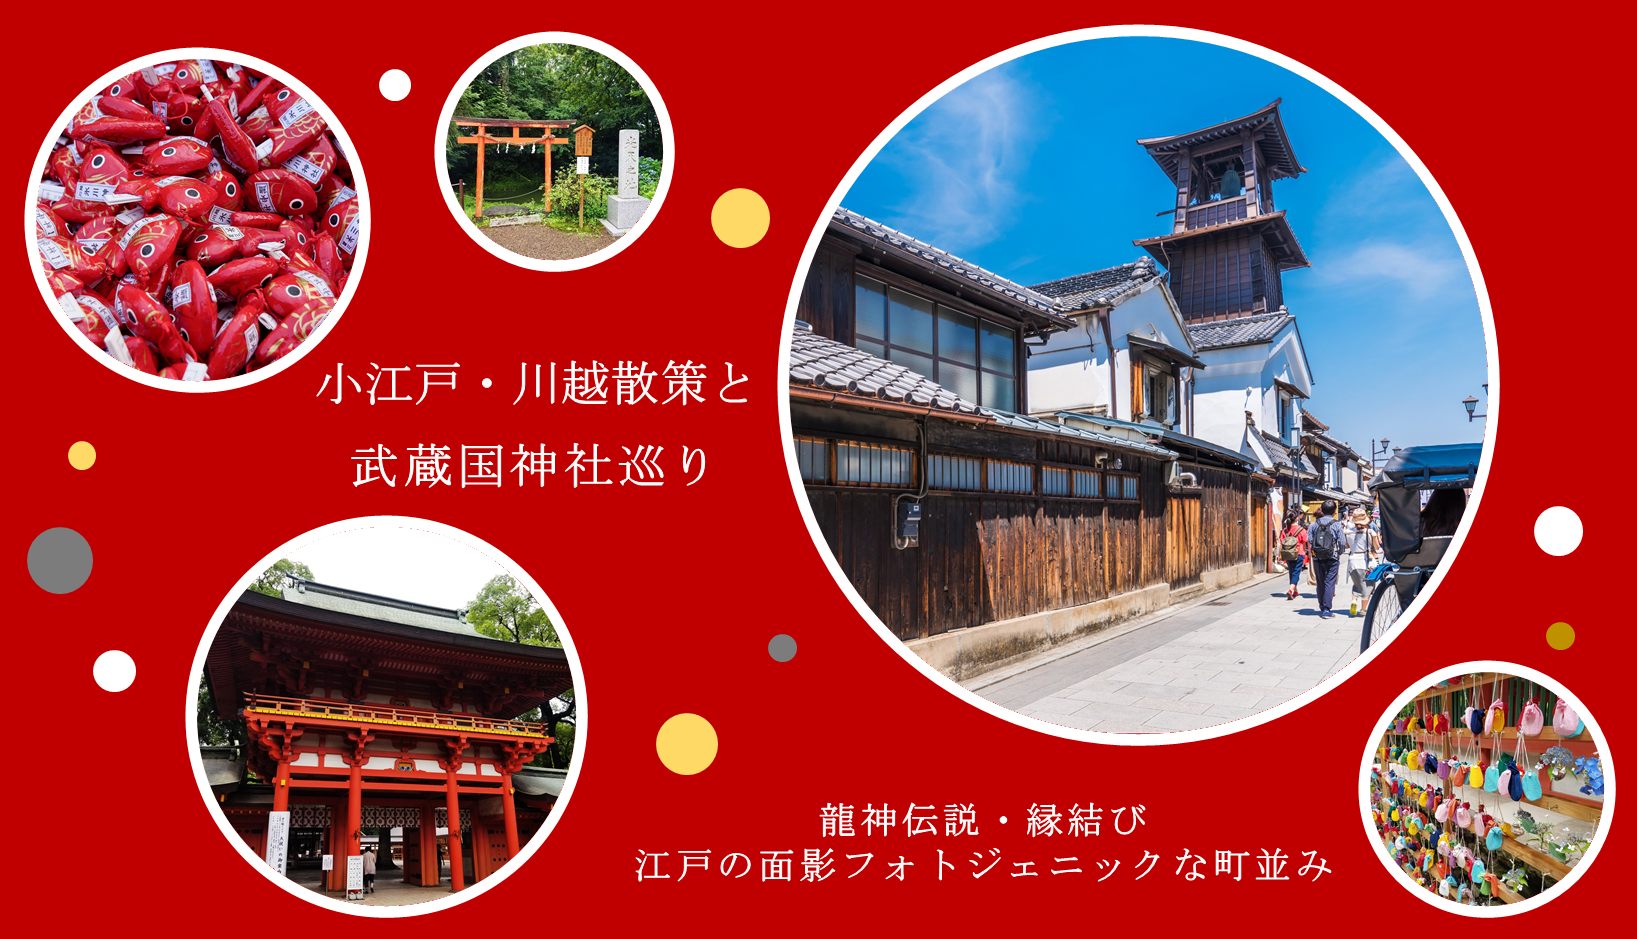 小江戸川越と氷川神社参拝バスツアー 四季の旅